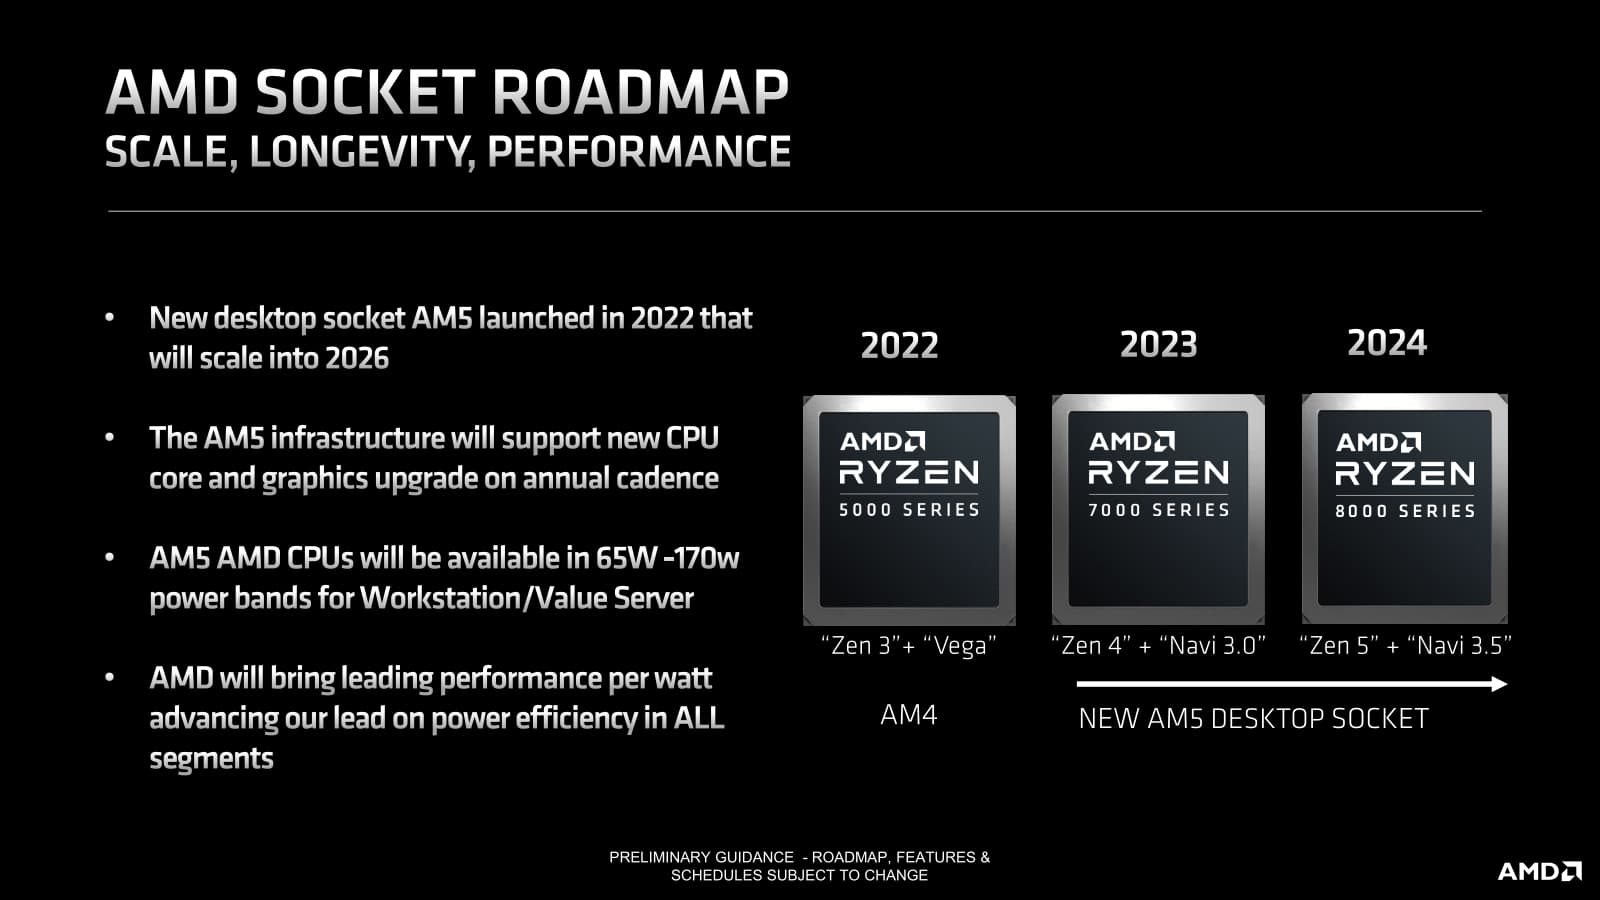 AMDが以前に公開したロードマップスライド